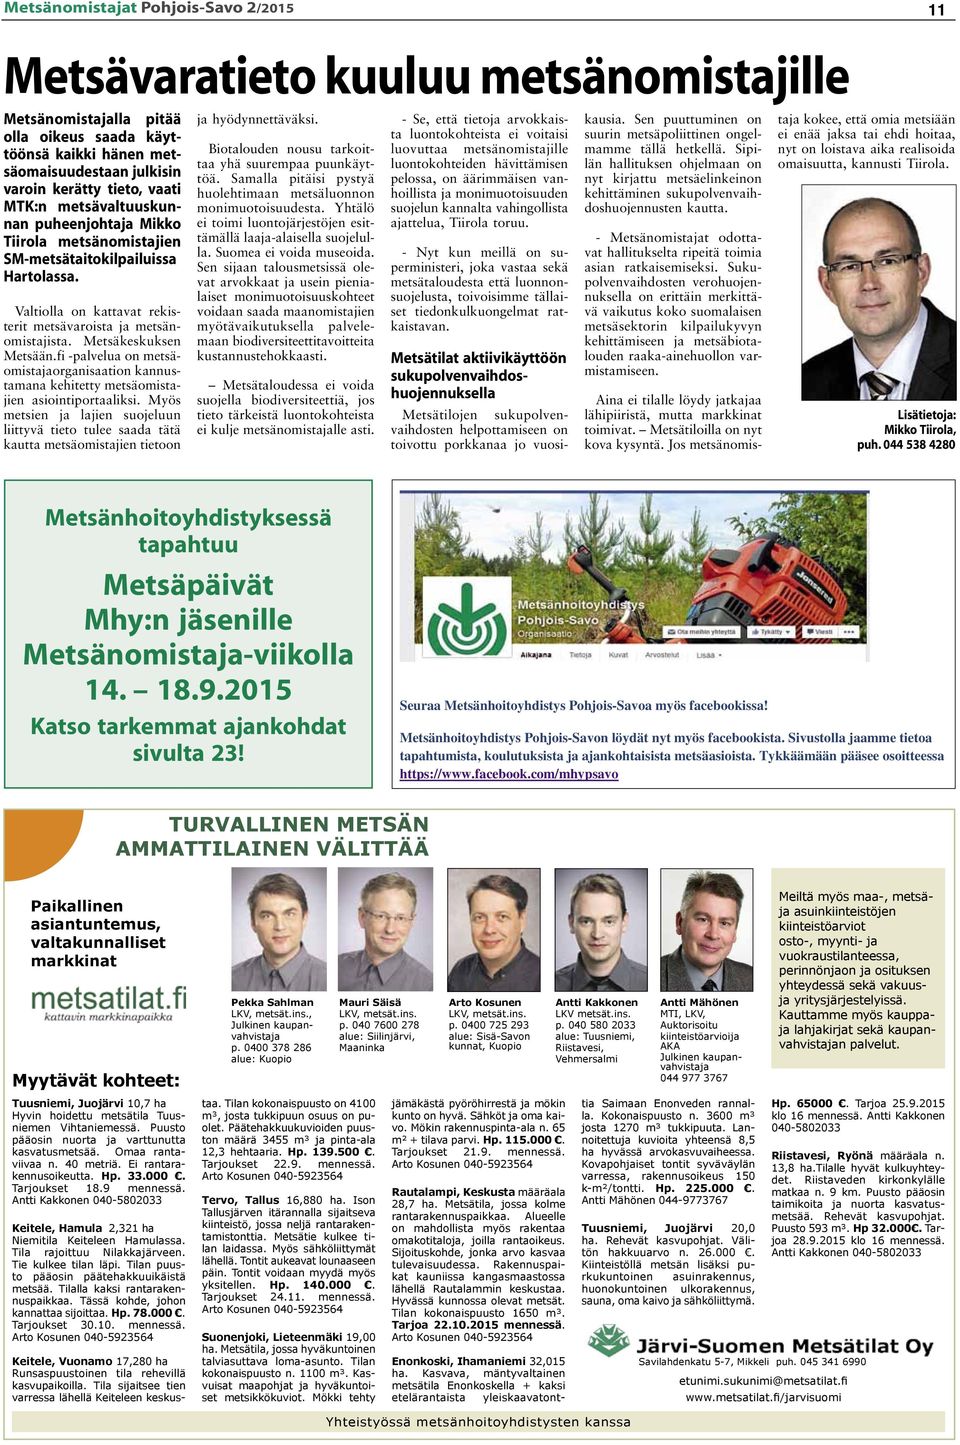 Metsäkeskuksen Metsään.fi -palvelua on metsäomistajaorganisaation kannustamana kehitetty metsäomistajien asiointiportaaliksi.